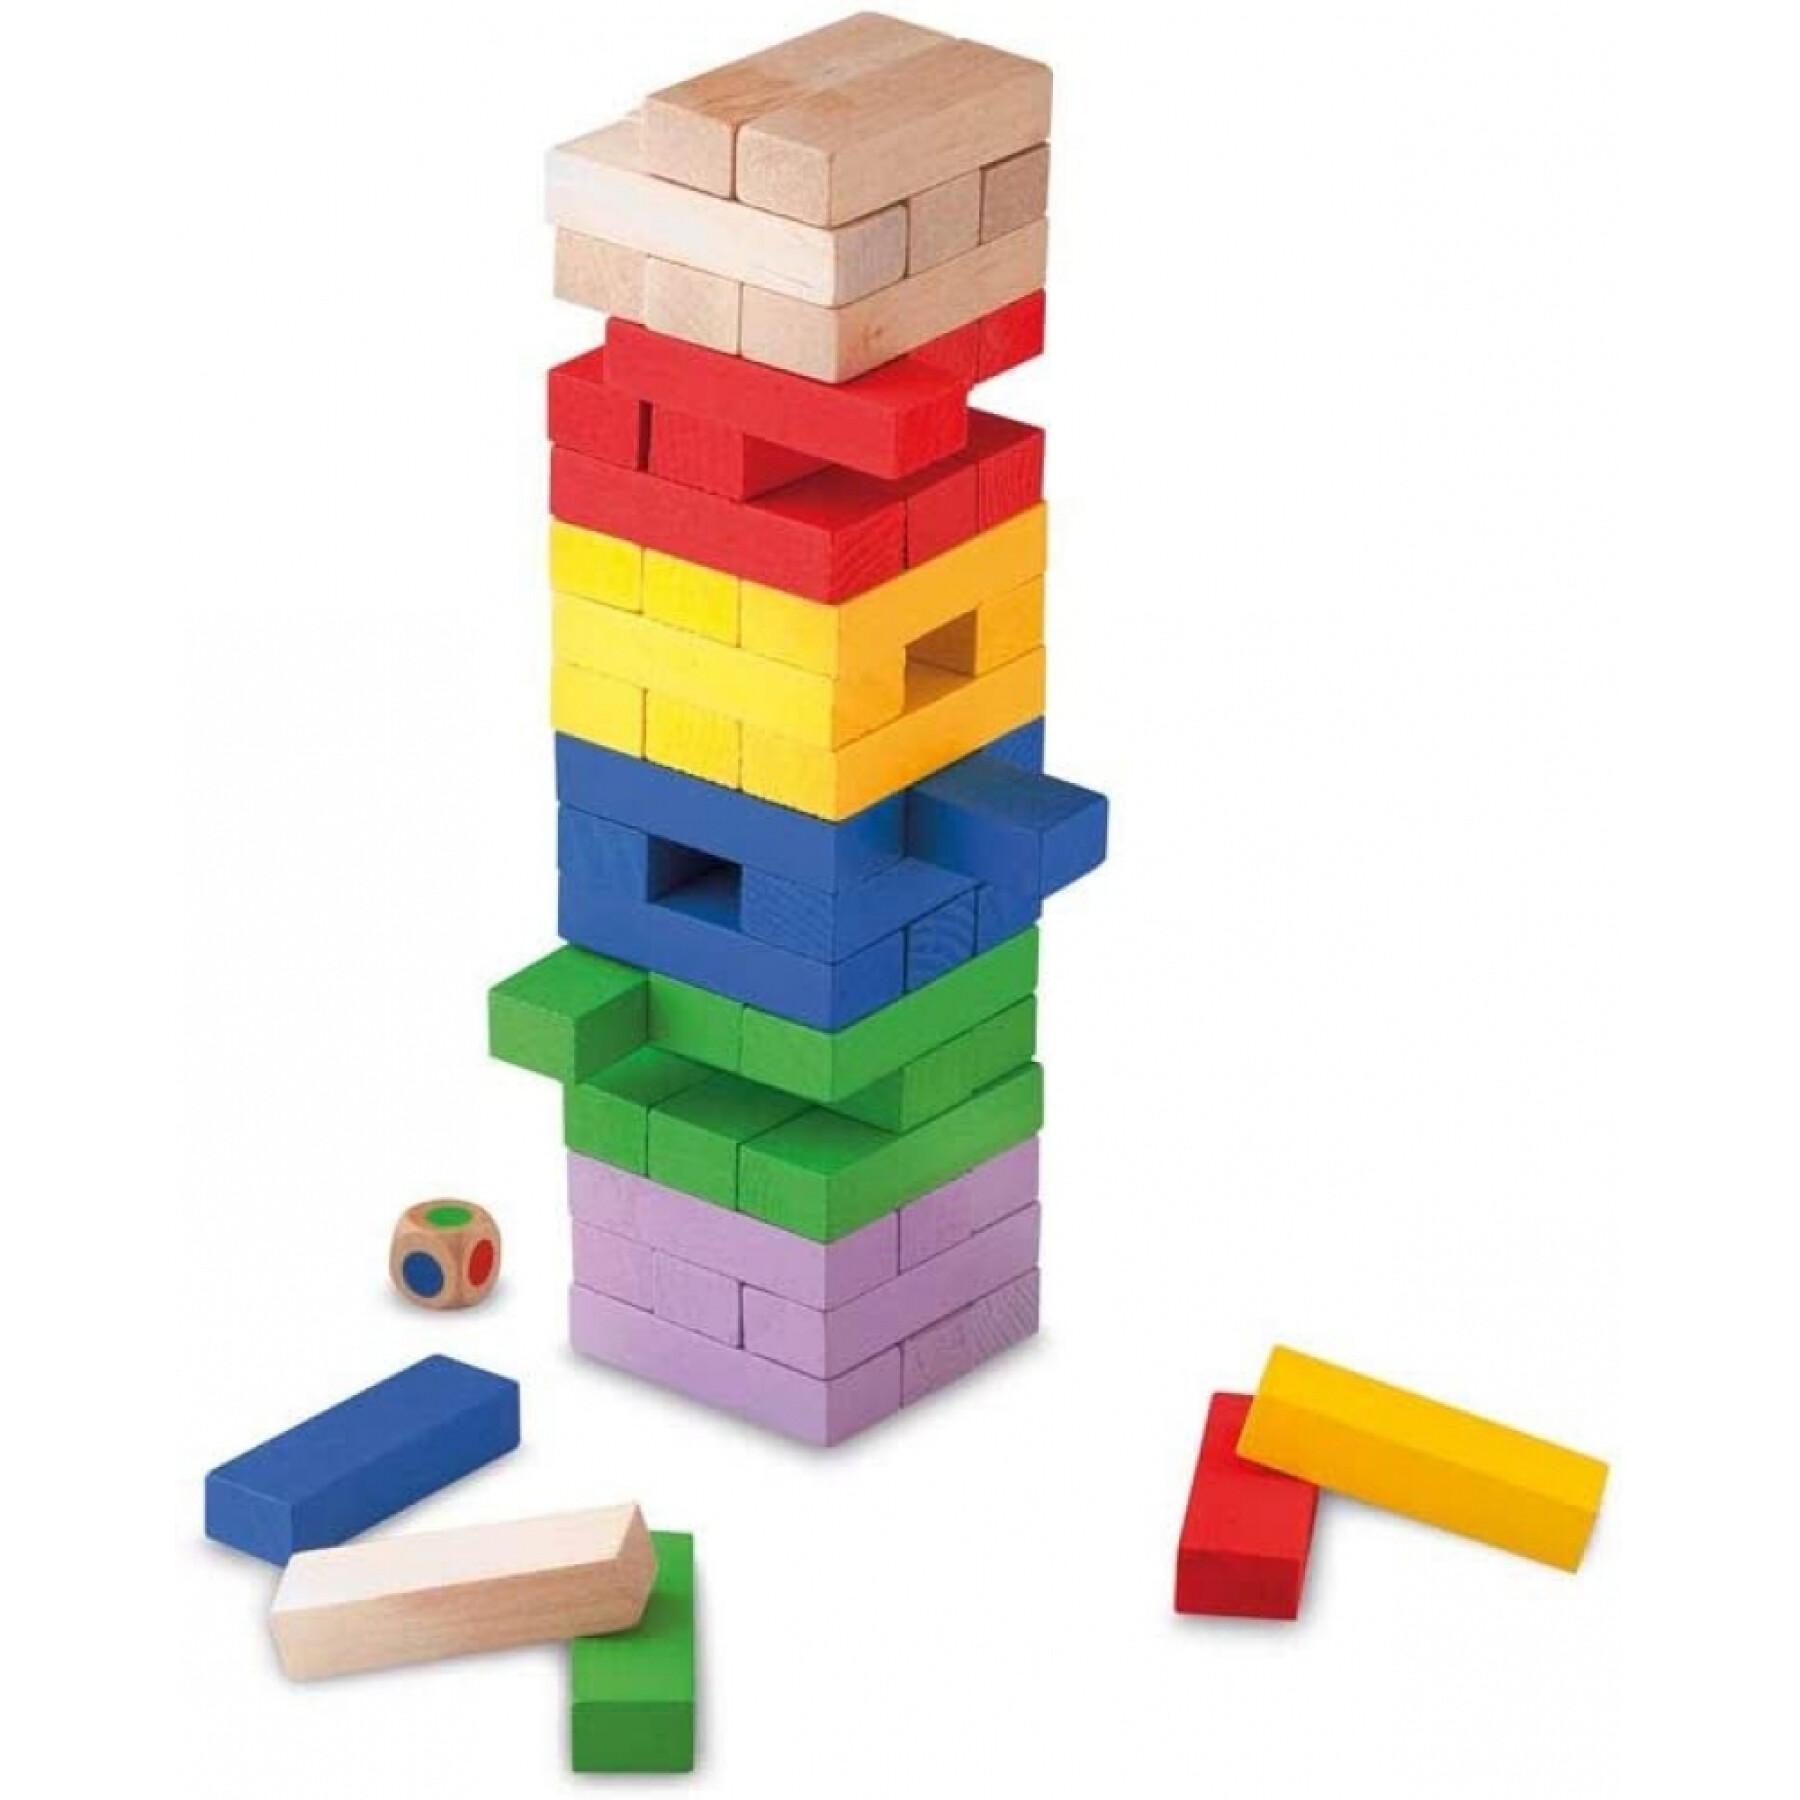 Spel med skicklighet - färgglada torn i trä Cayro Block&block